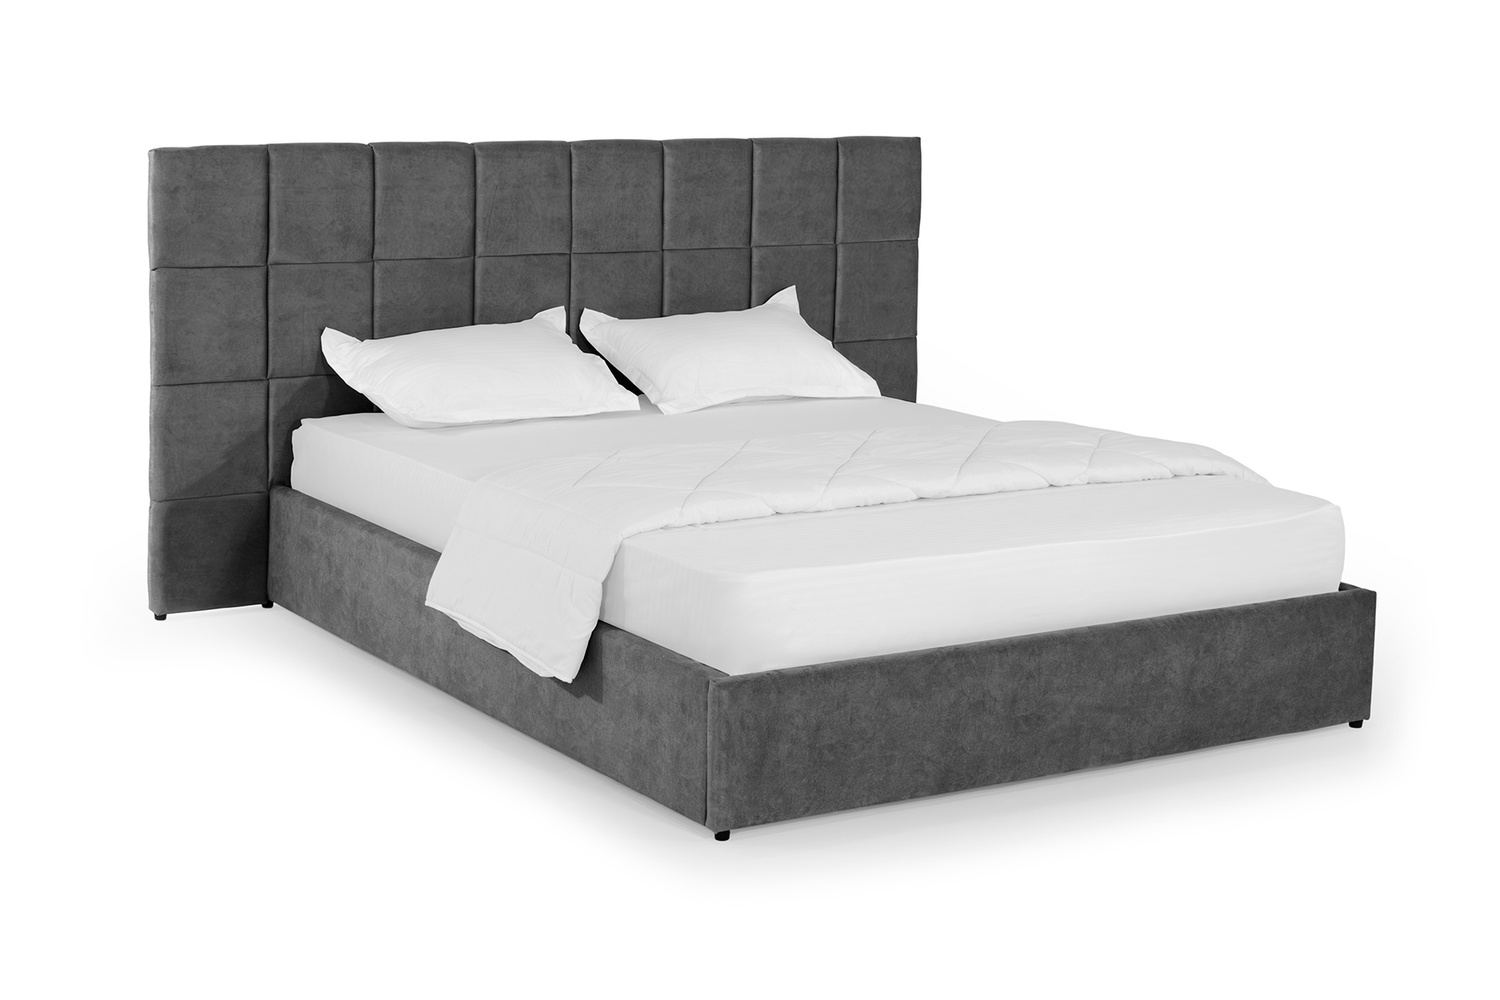 Ліжко Гортензія 160х190 (Темно-сірий, велюр, підйомний механізм, ніша) IMI grtnz160x190tsp фото